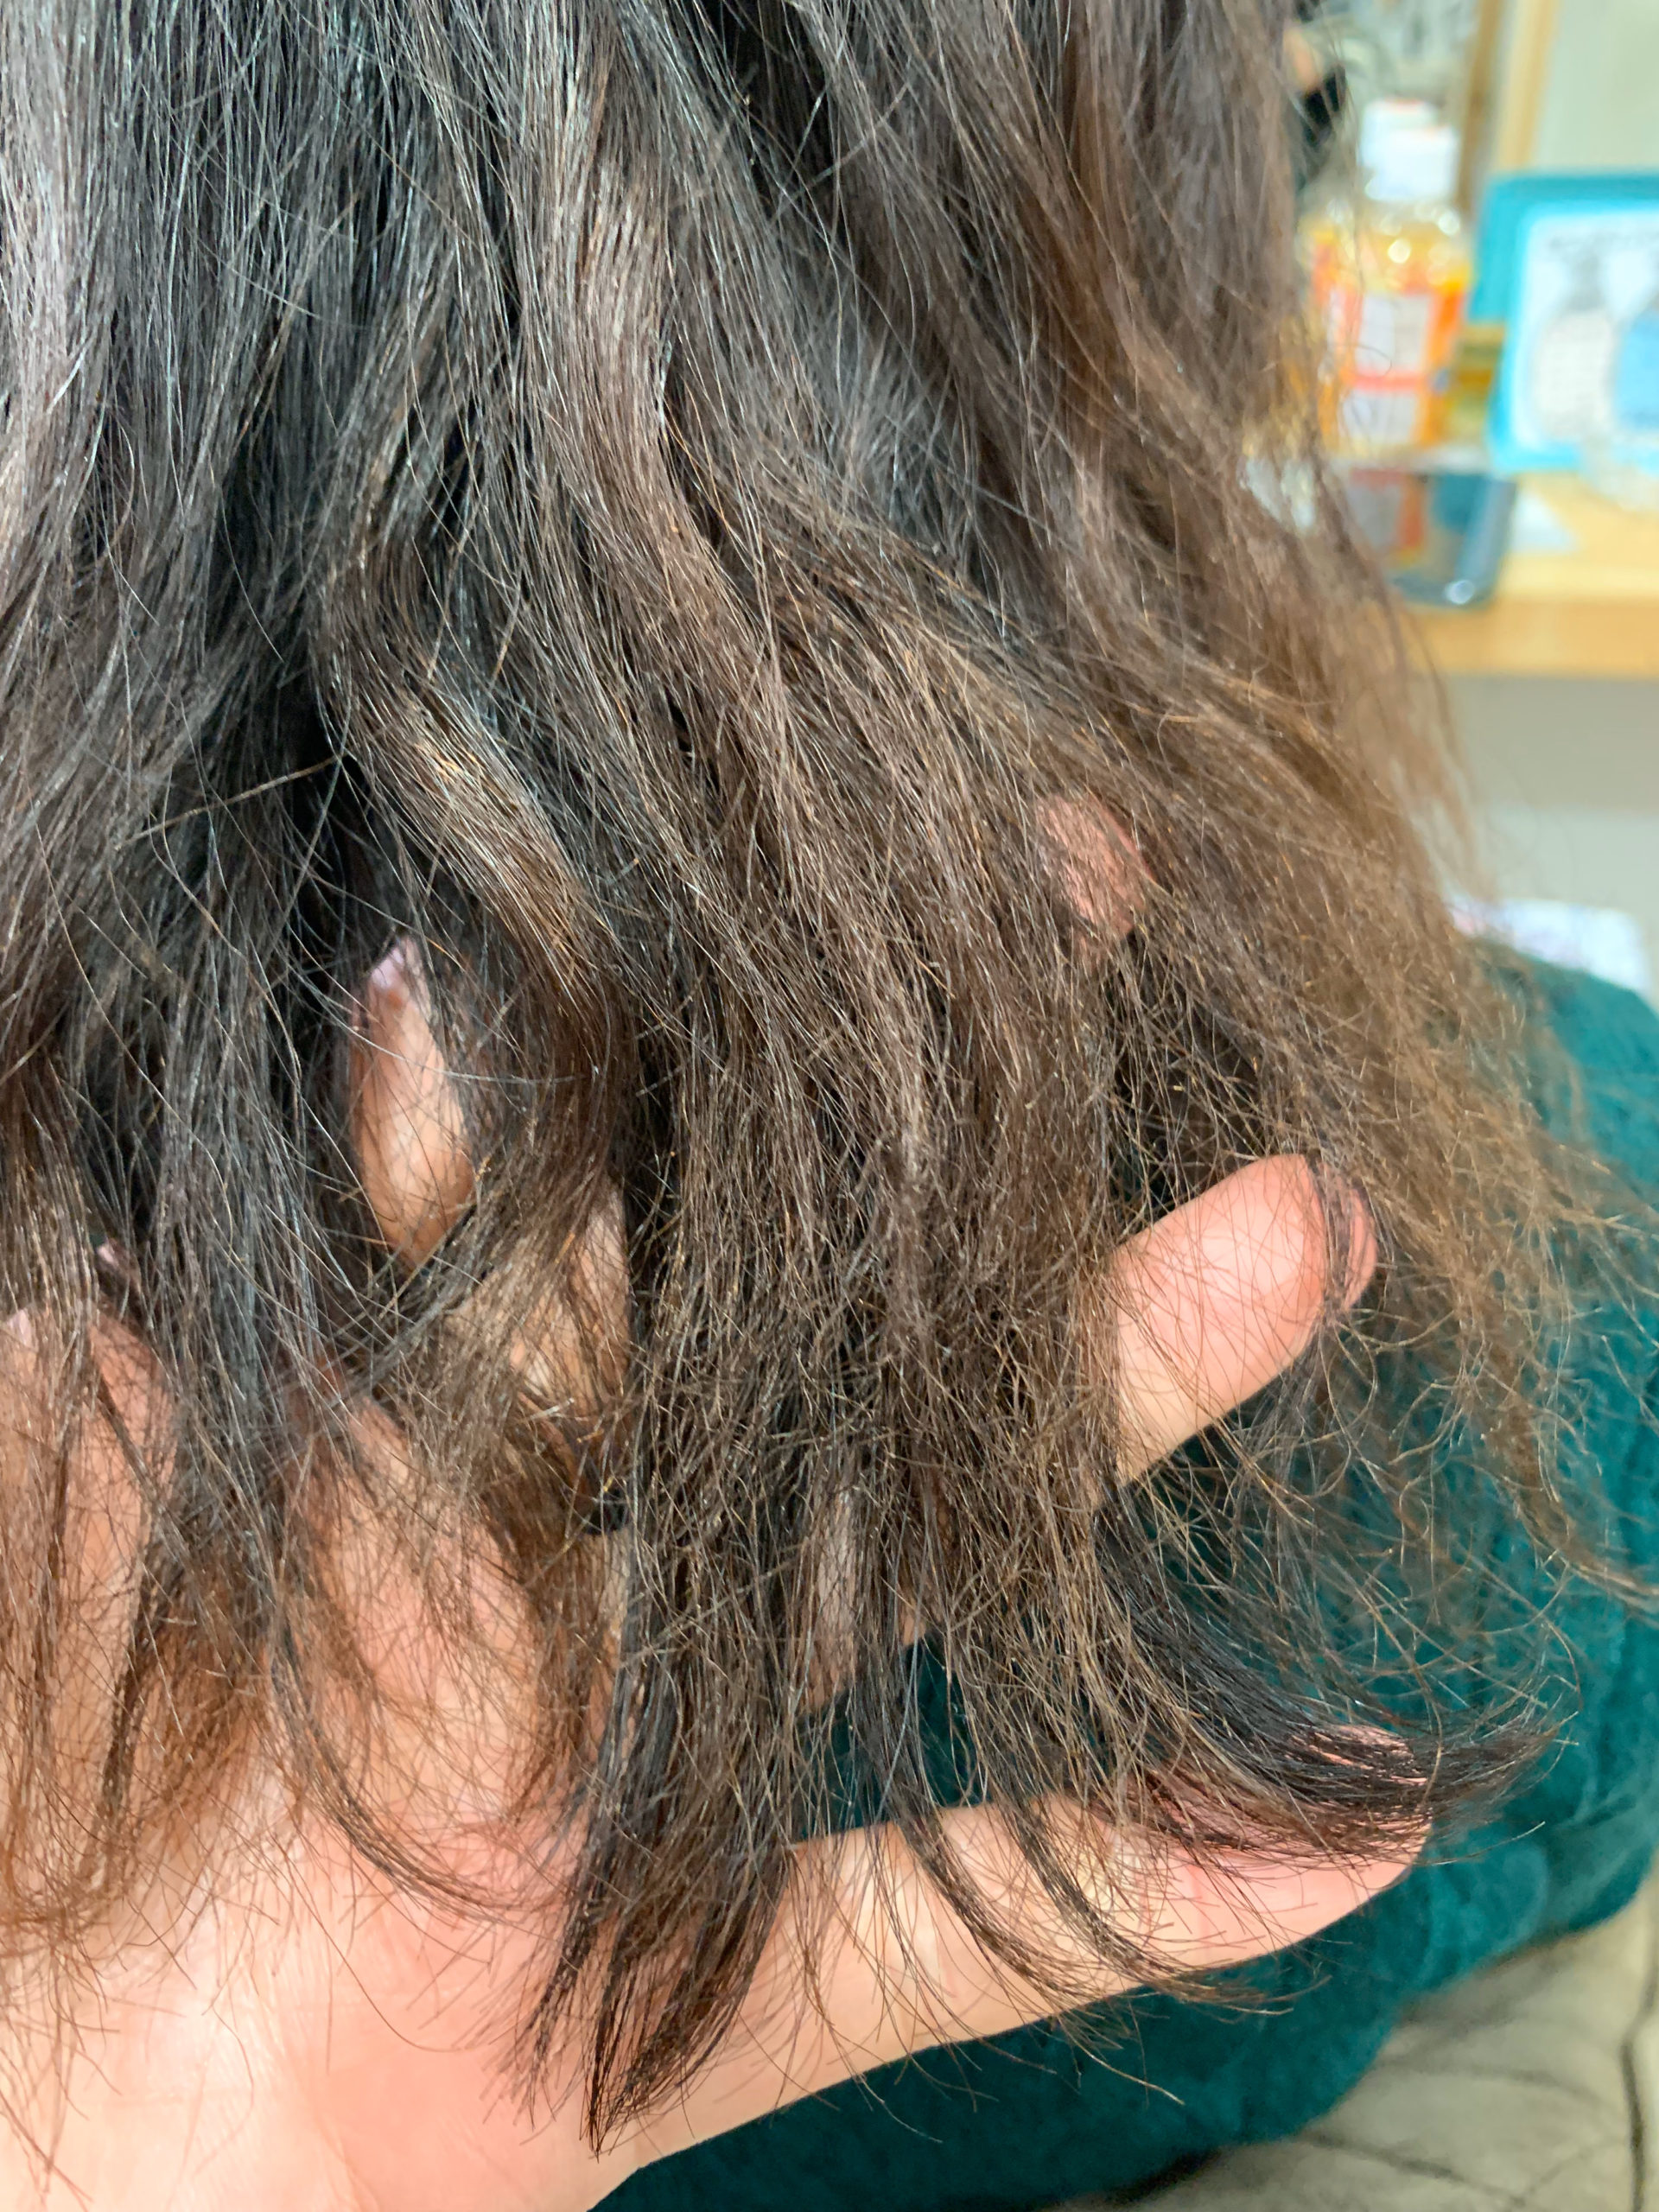 パーマの失敗で髪がチリチリになった【ビビリ矯正】で艶髪に変身。原宿・表参道『髪のお悩みを解決するヘアケア美容師の挑戦』